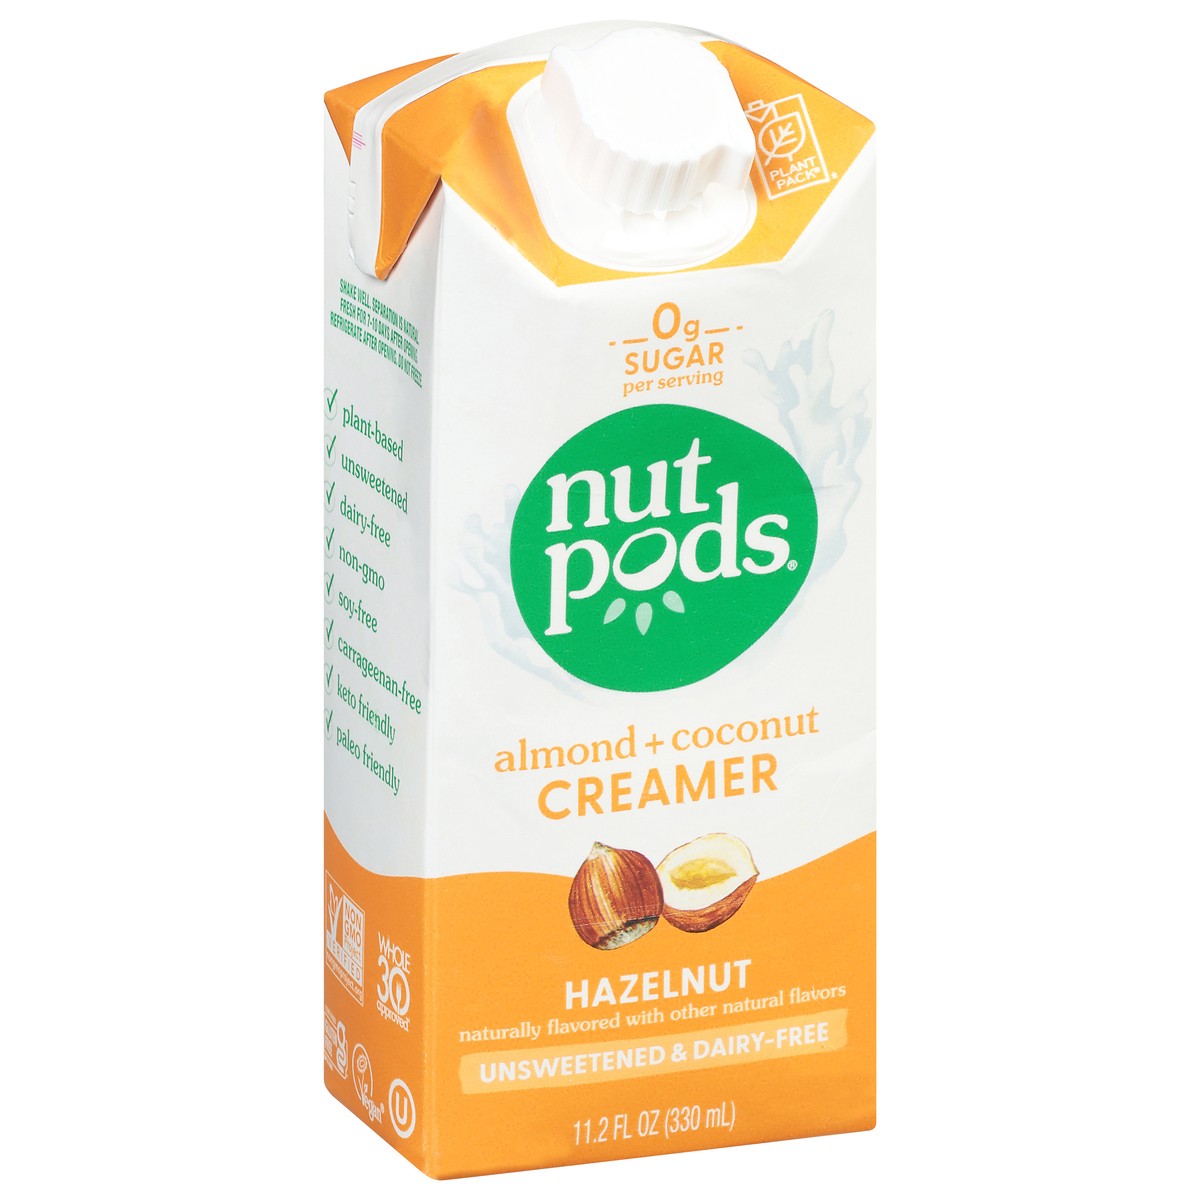 slide 5 of 9, nutpods Almond + Coconut Creamer 11.2 fl oz, 11.2 fl oz